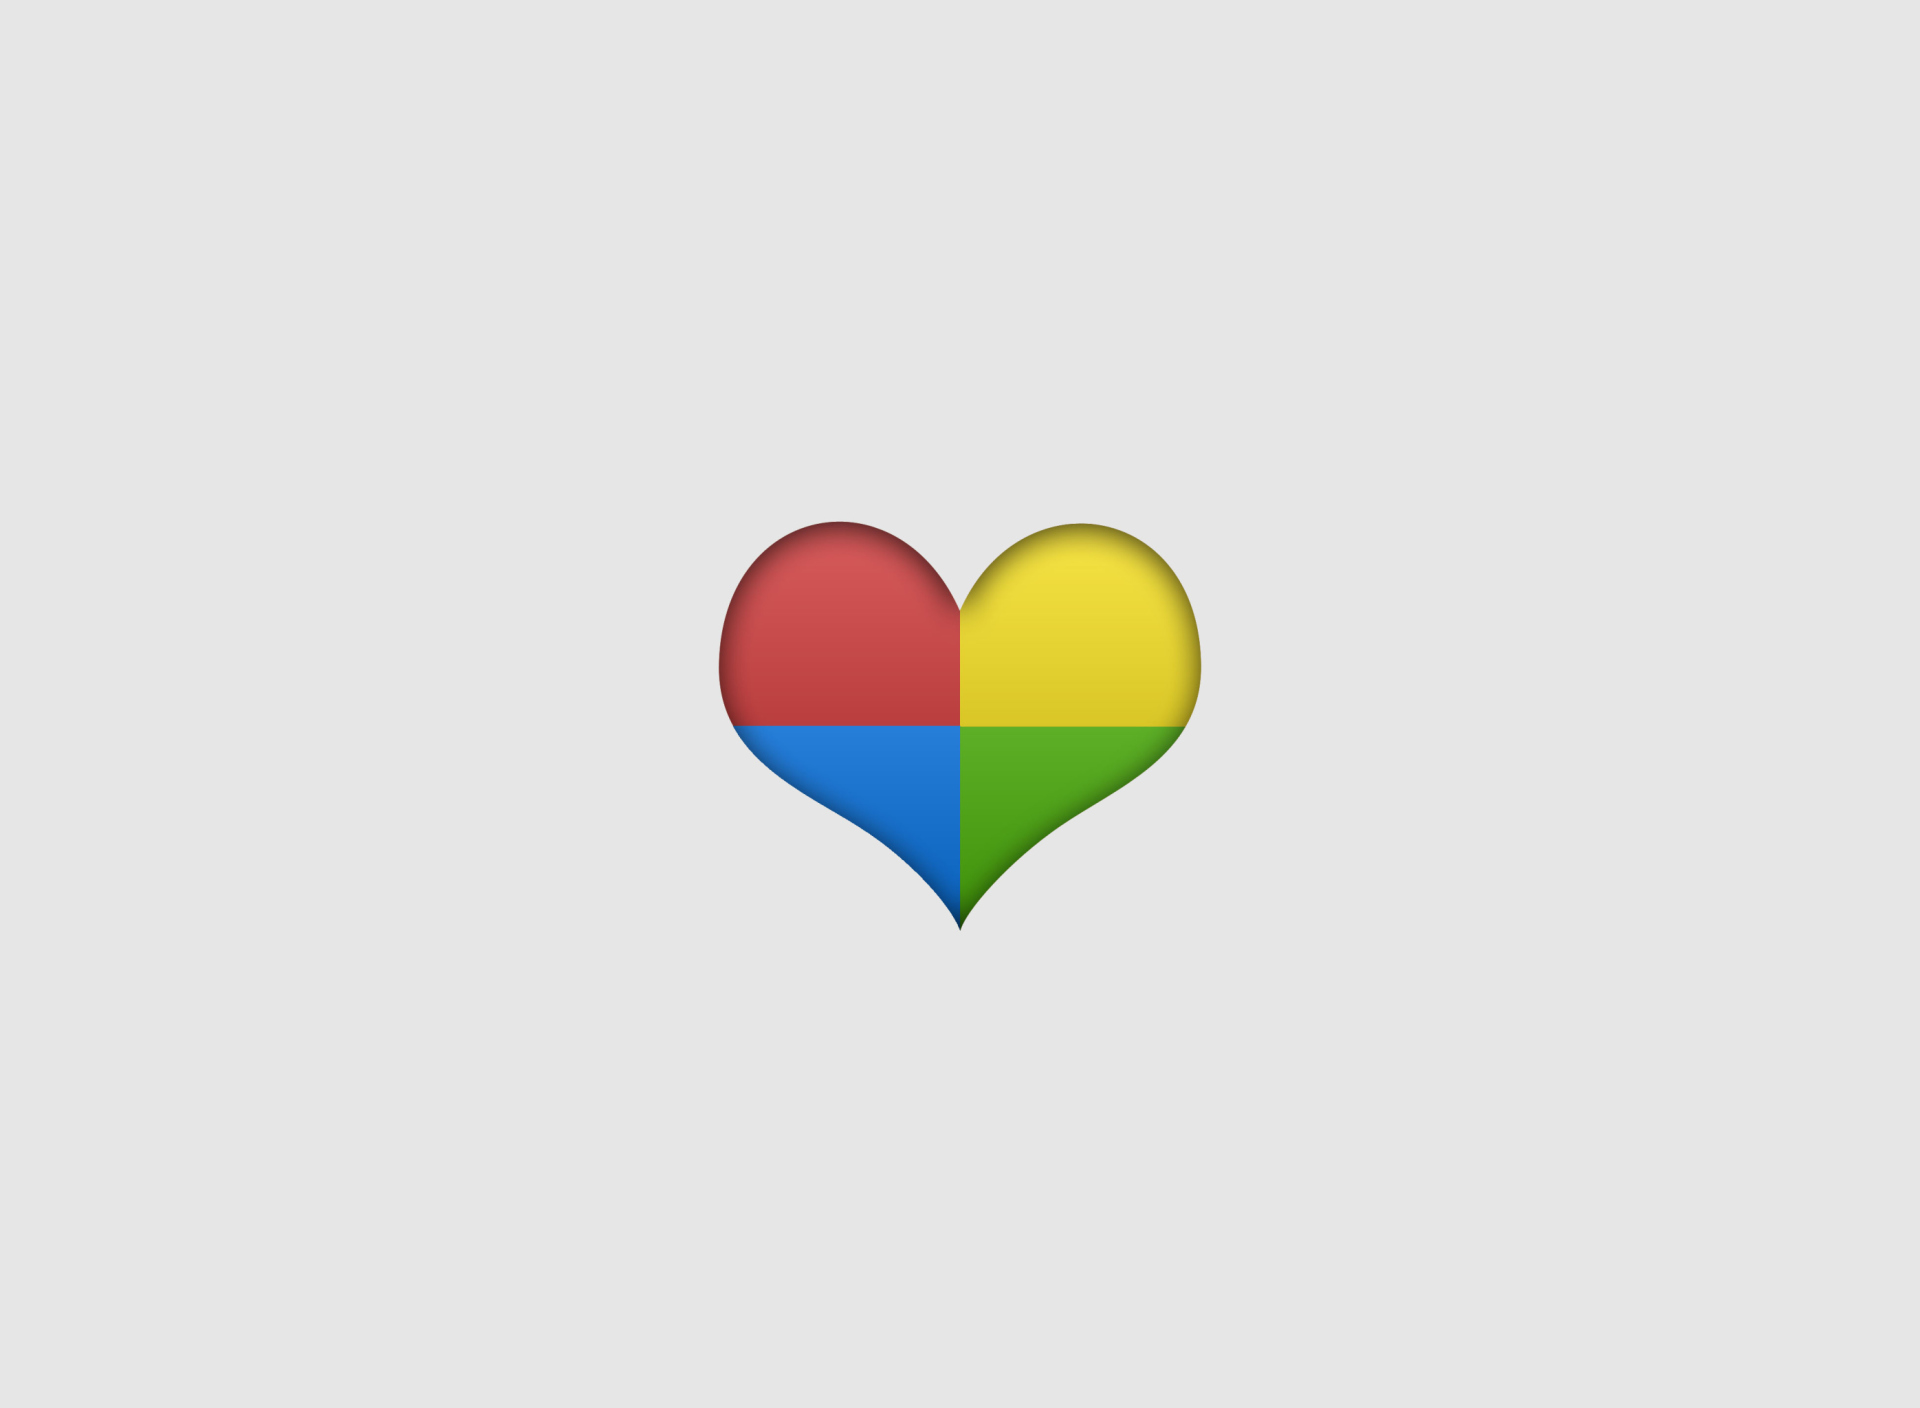 Das Google Heart Wallpaper 1920x1408